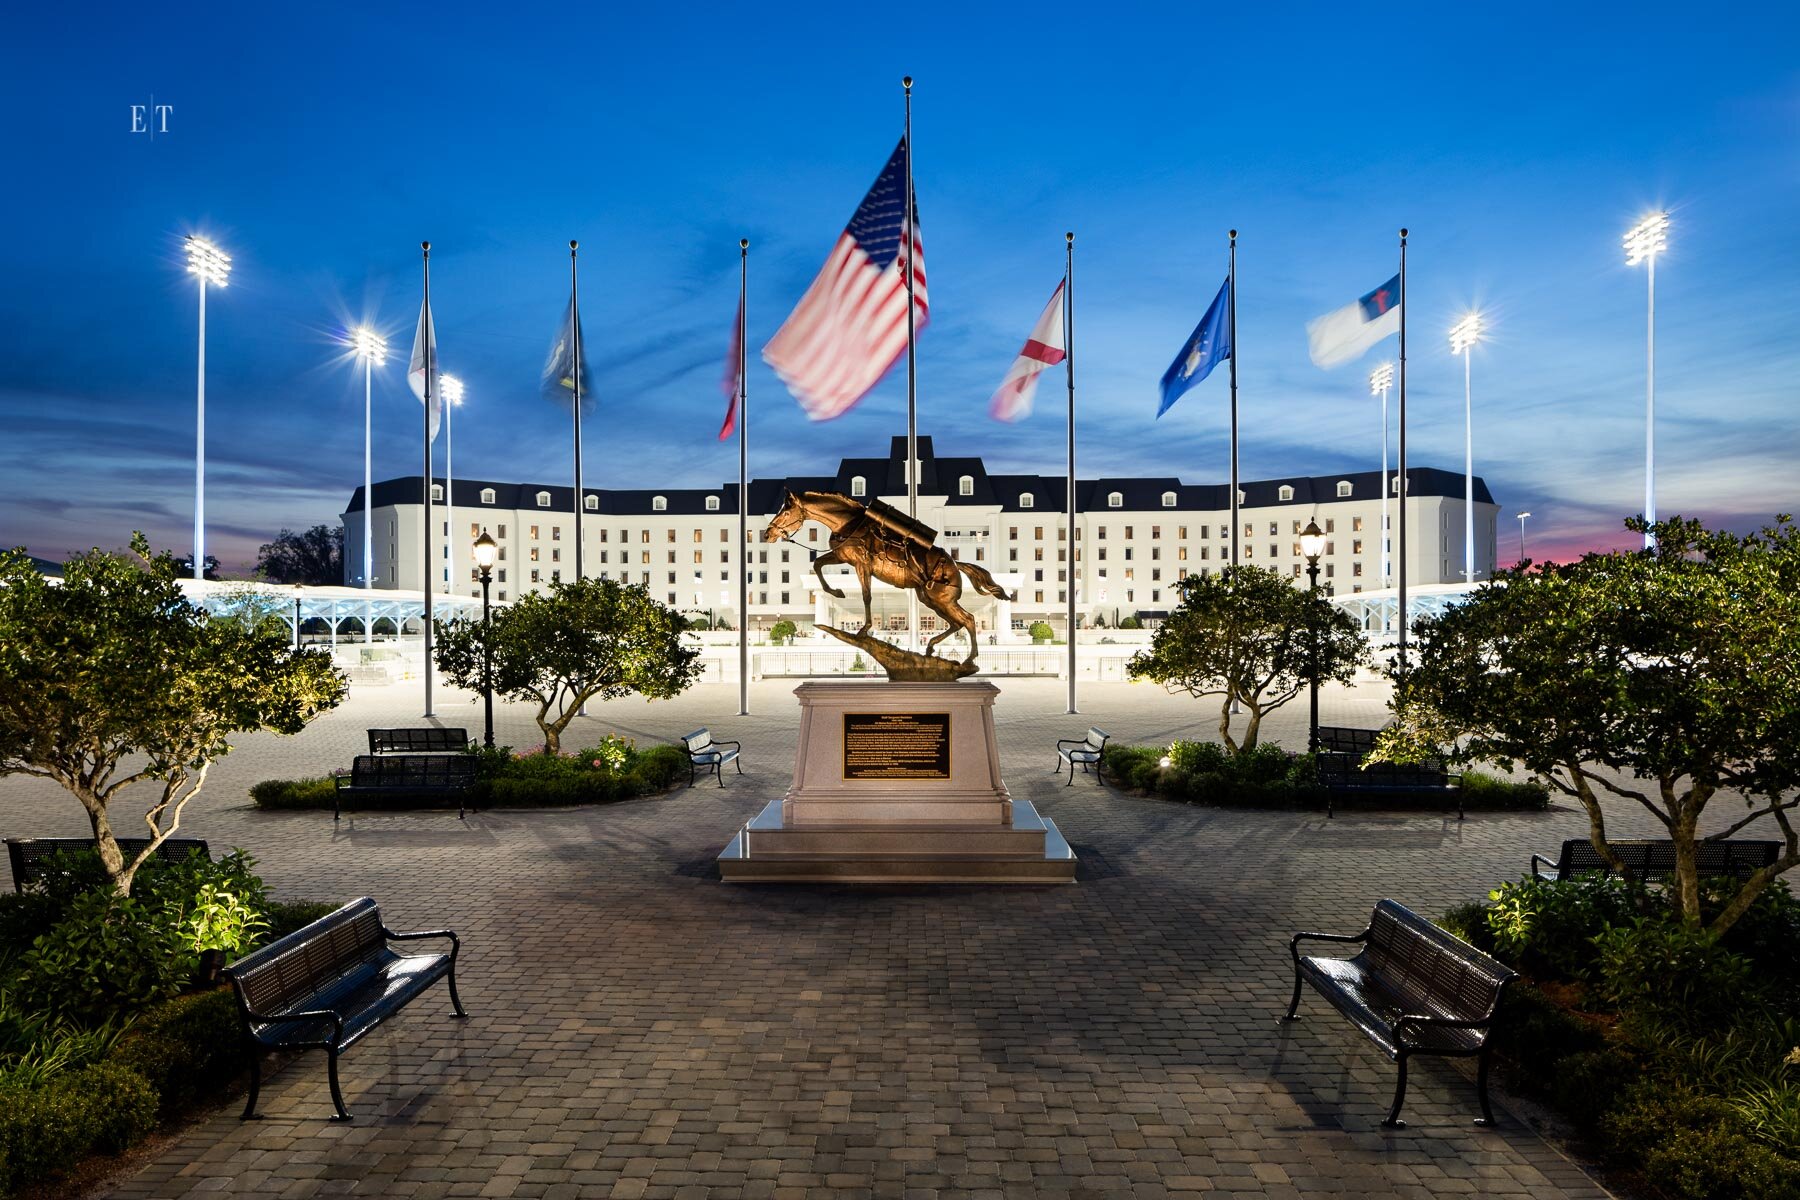  The Equestrian Hotel | World Equestrian Center | Ocala Florida - Event Arena 